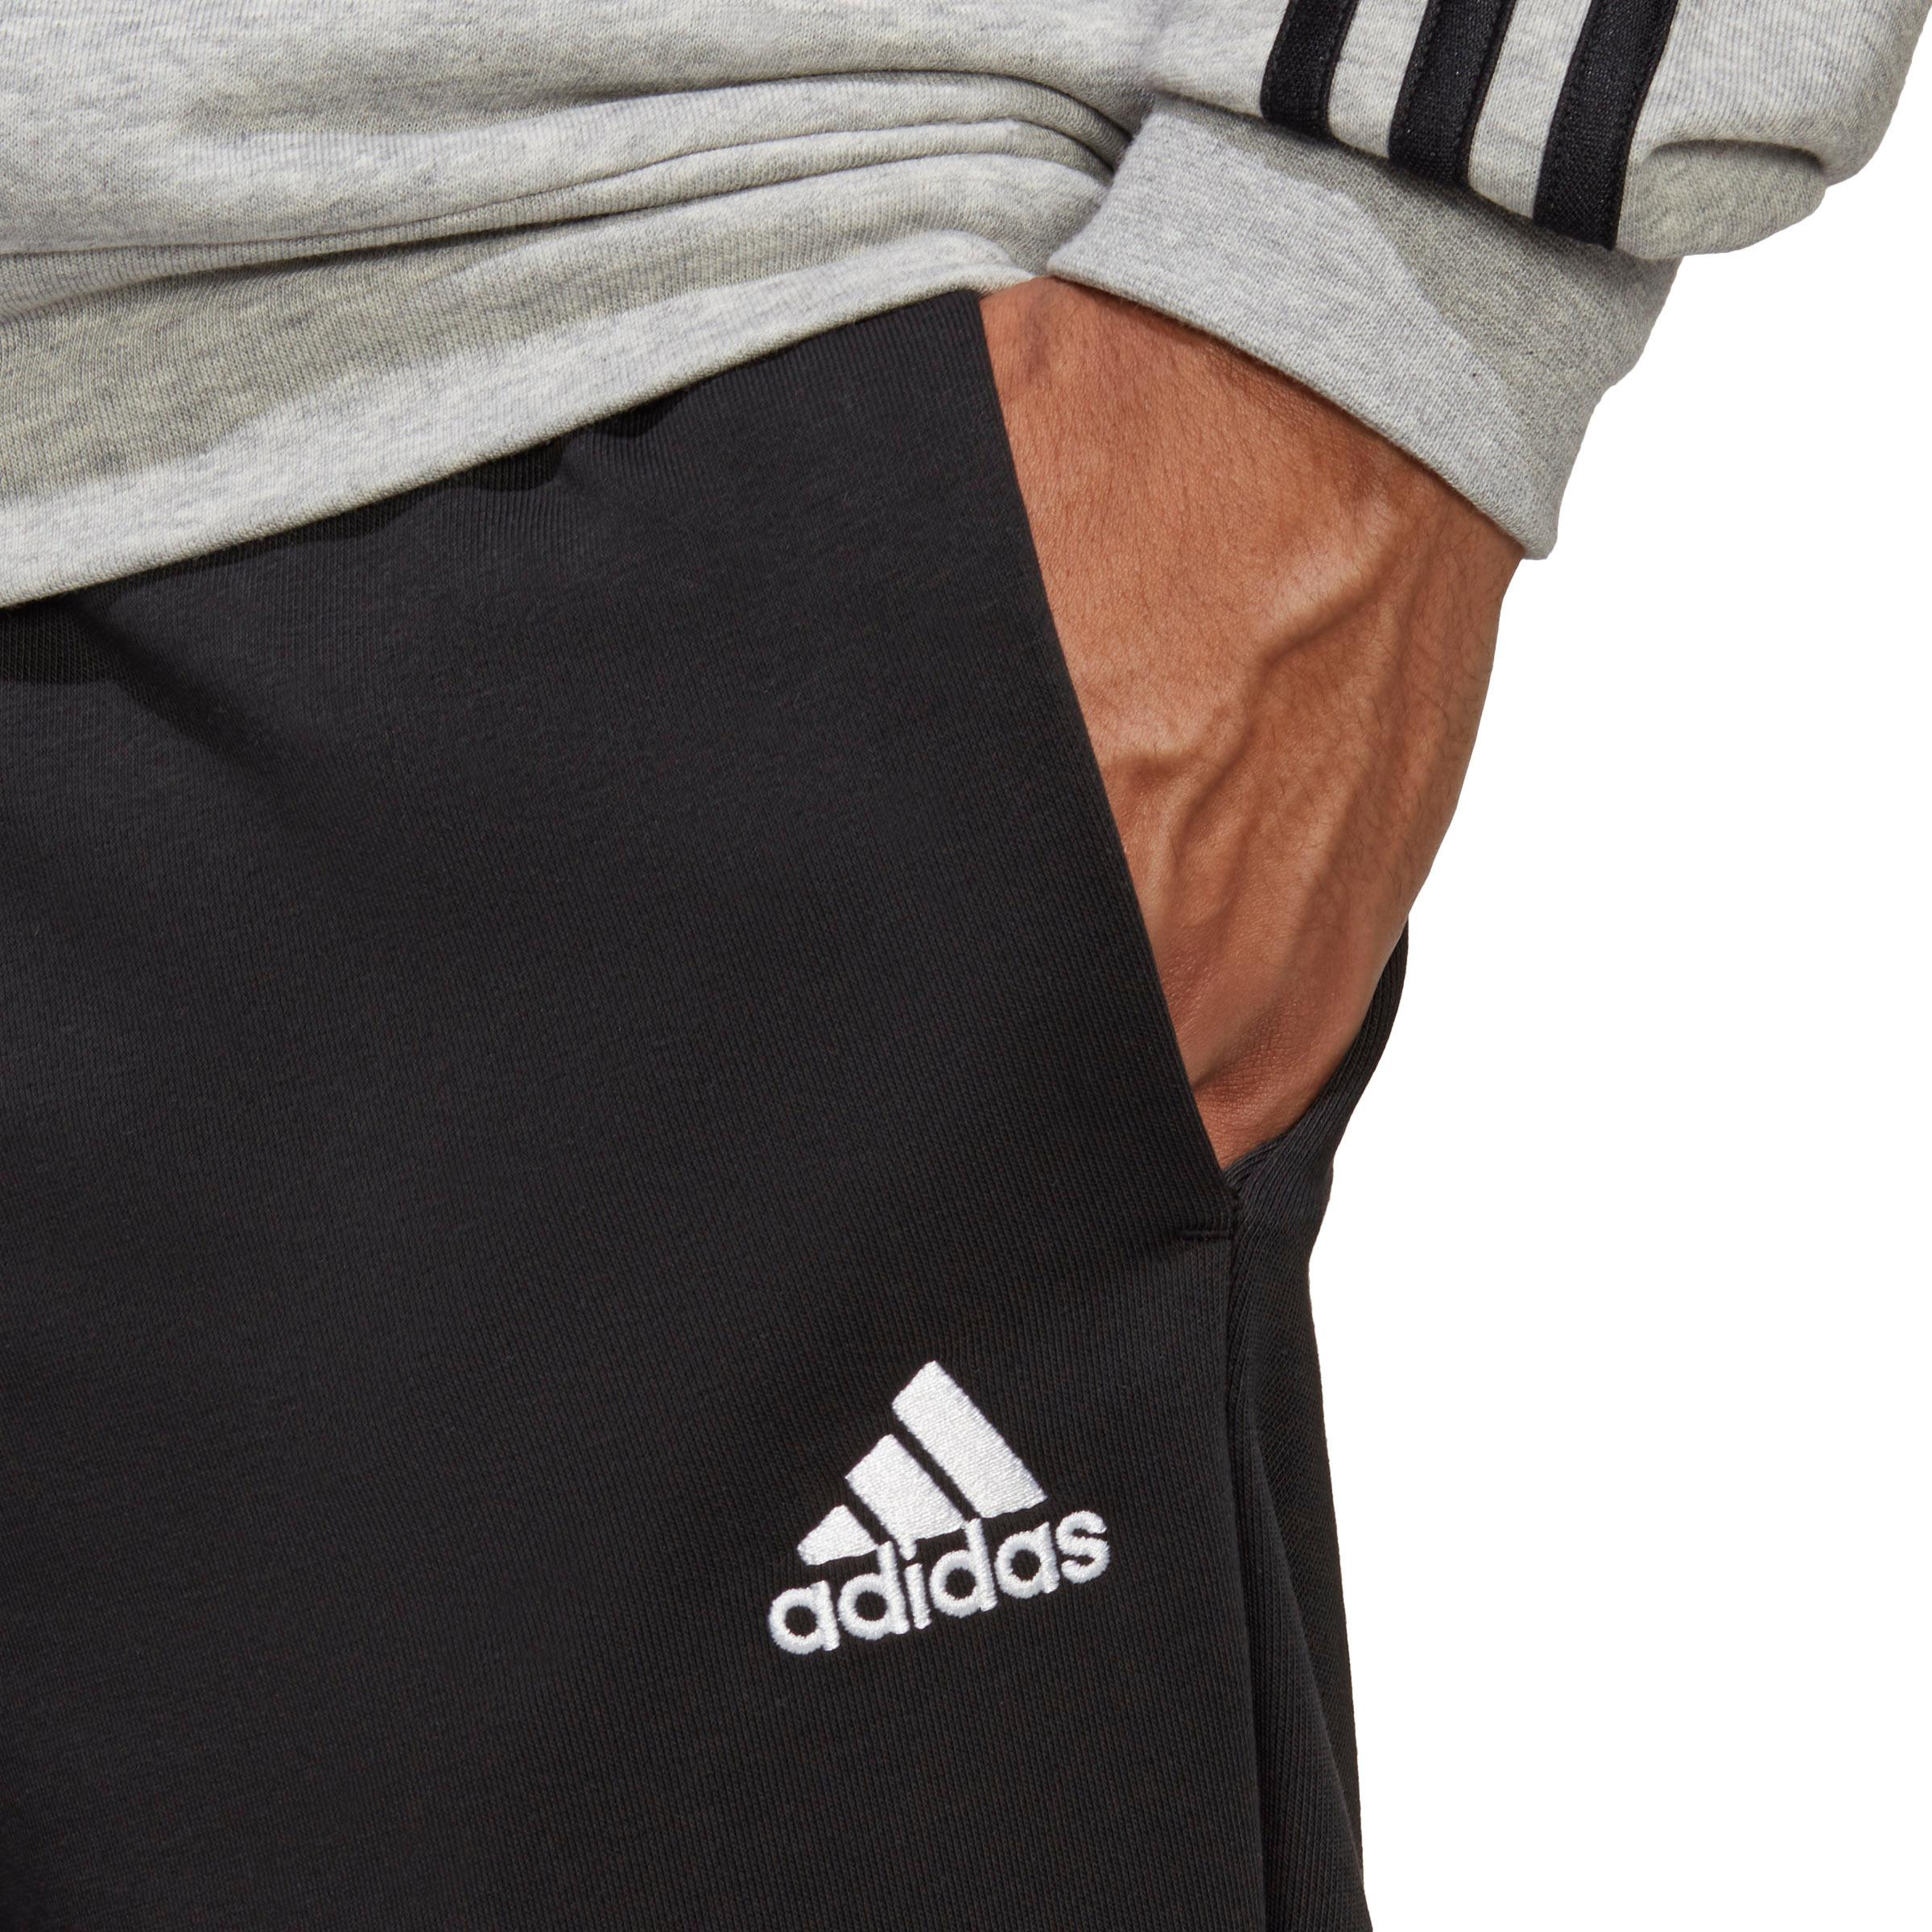 Adidas BASIC 3-STREIFEN FRENCH TERRY von SportScheck Herren Trainingsanzug medium grey kaufen im Shop heather-black Online